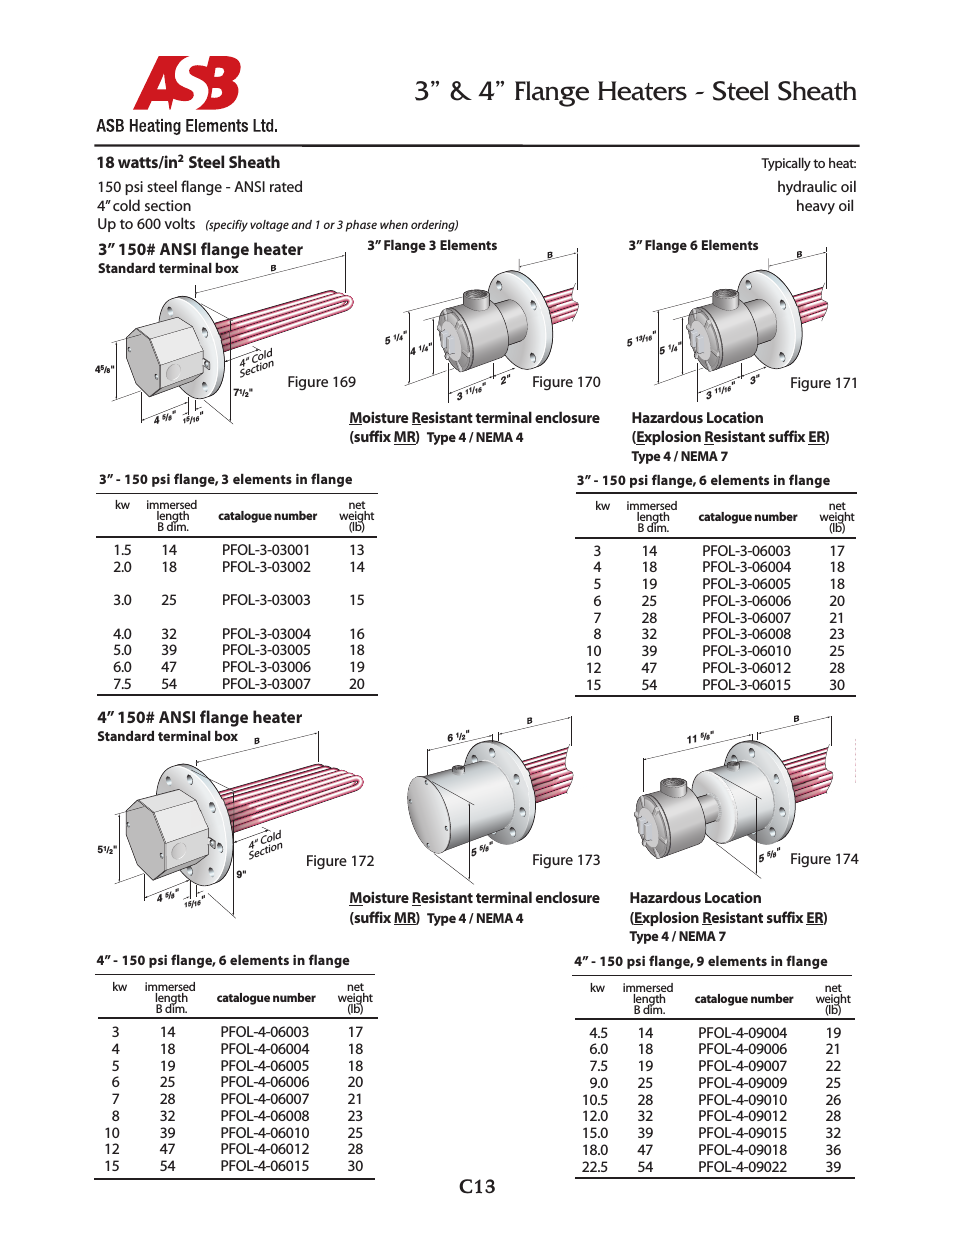 3” & 4” Flange Heaters - 18 watts - Steel Sheath